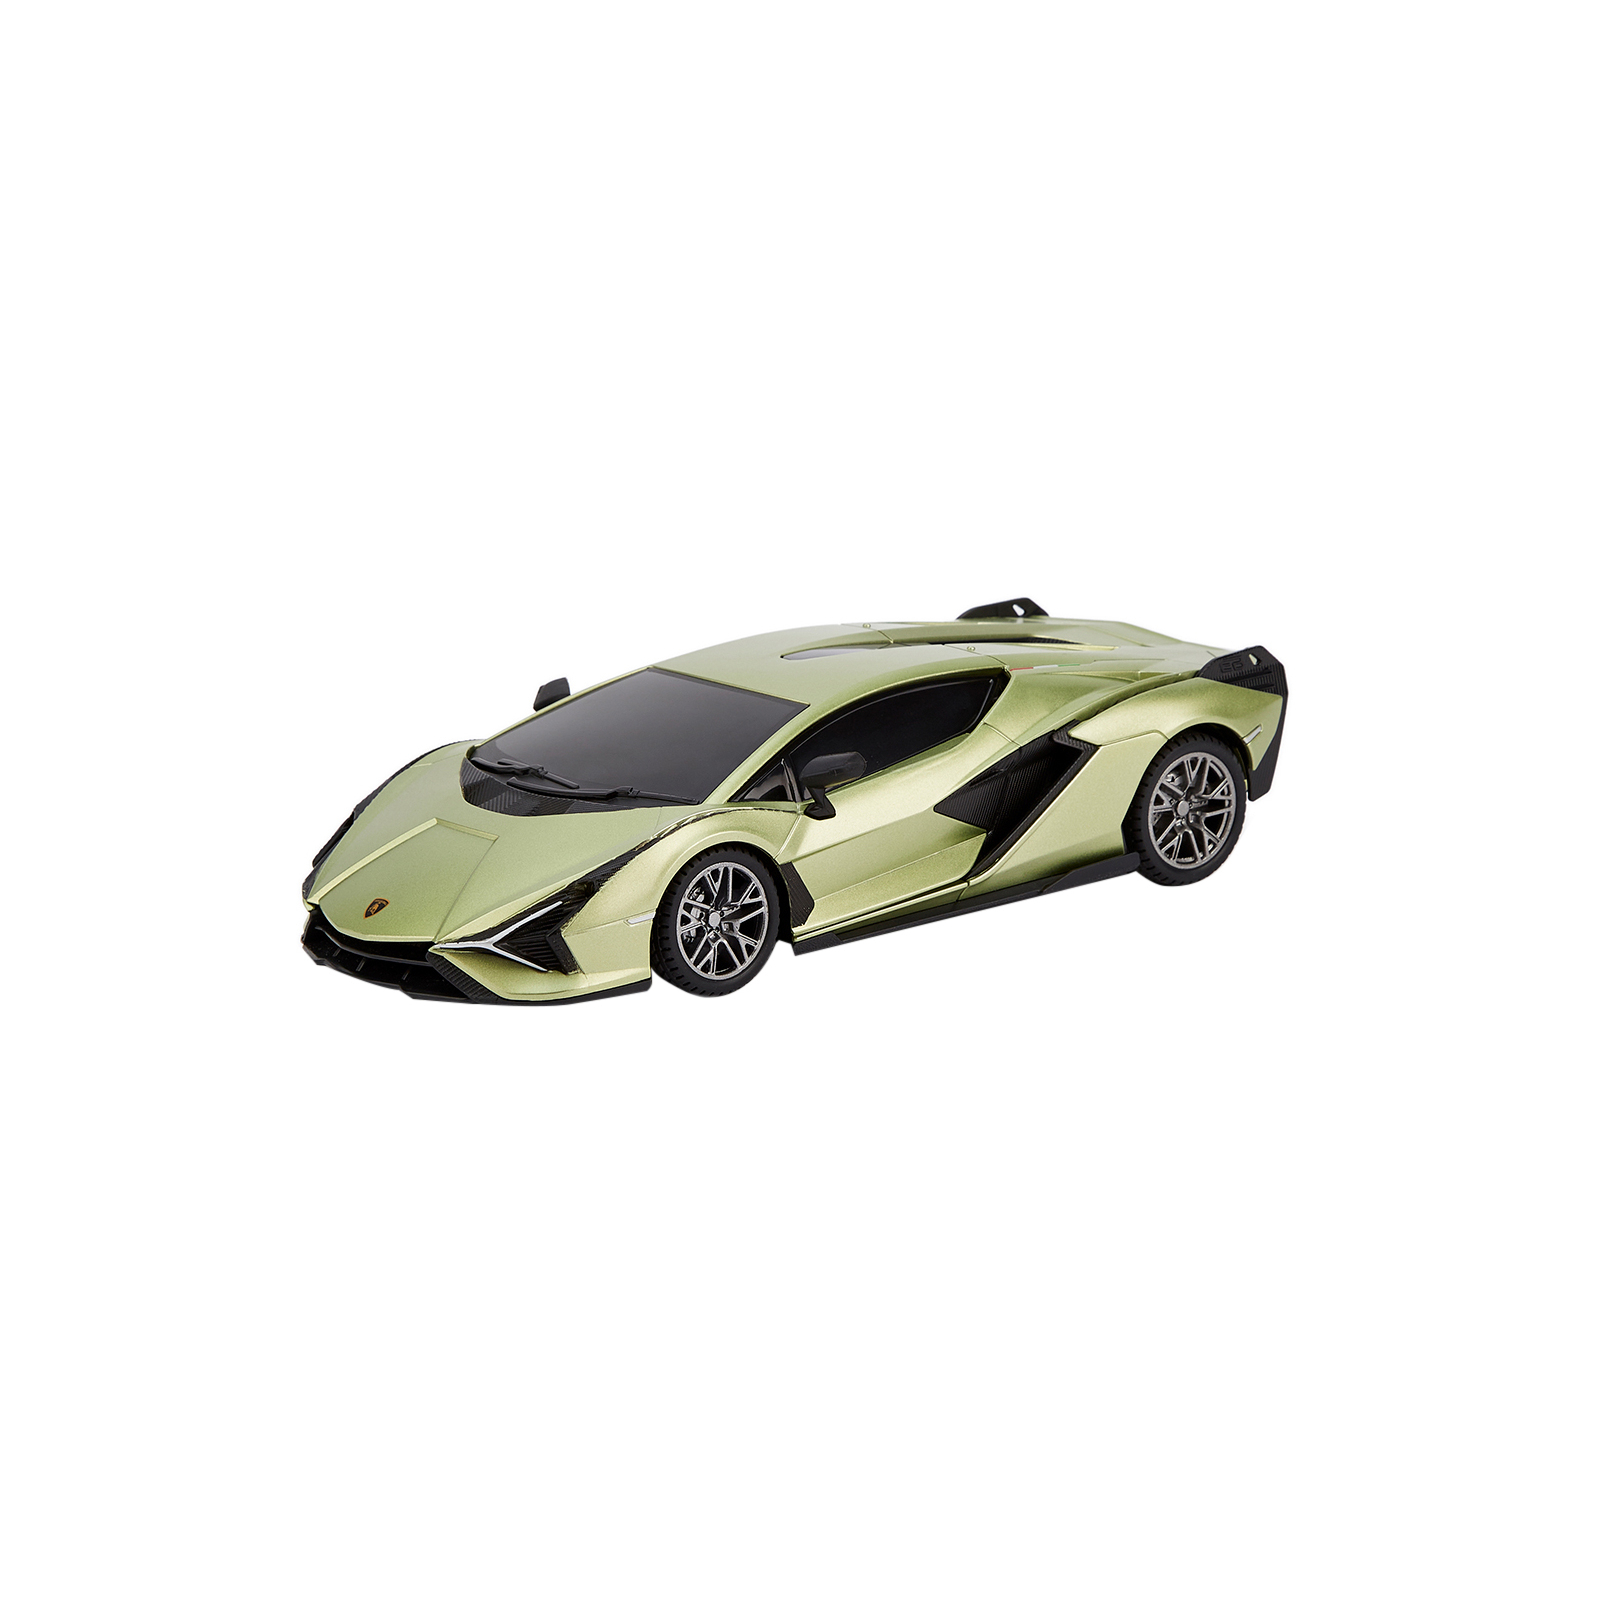 Радиоуправляемая игрушка KS Drive Lamborghini Sian 1:24, 2.4Ghz зеленый (124GLSG)